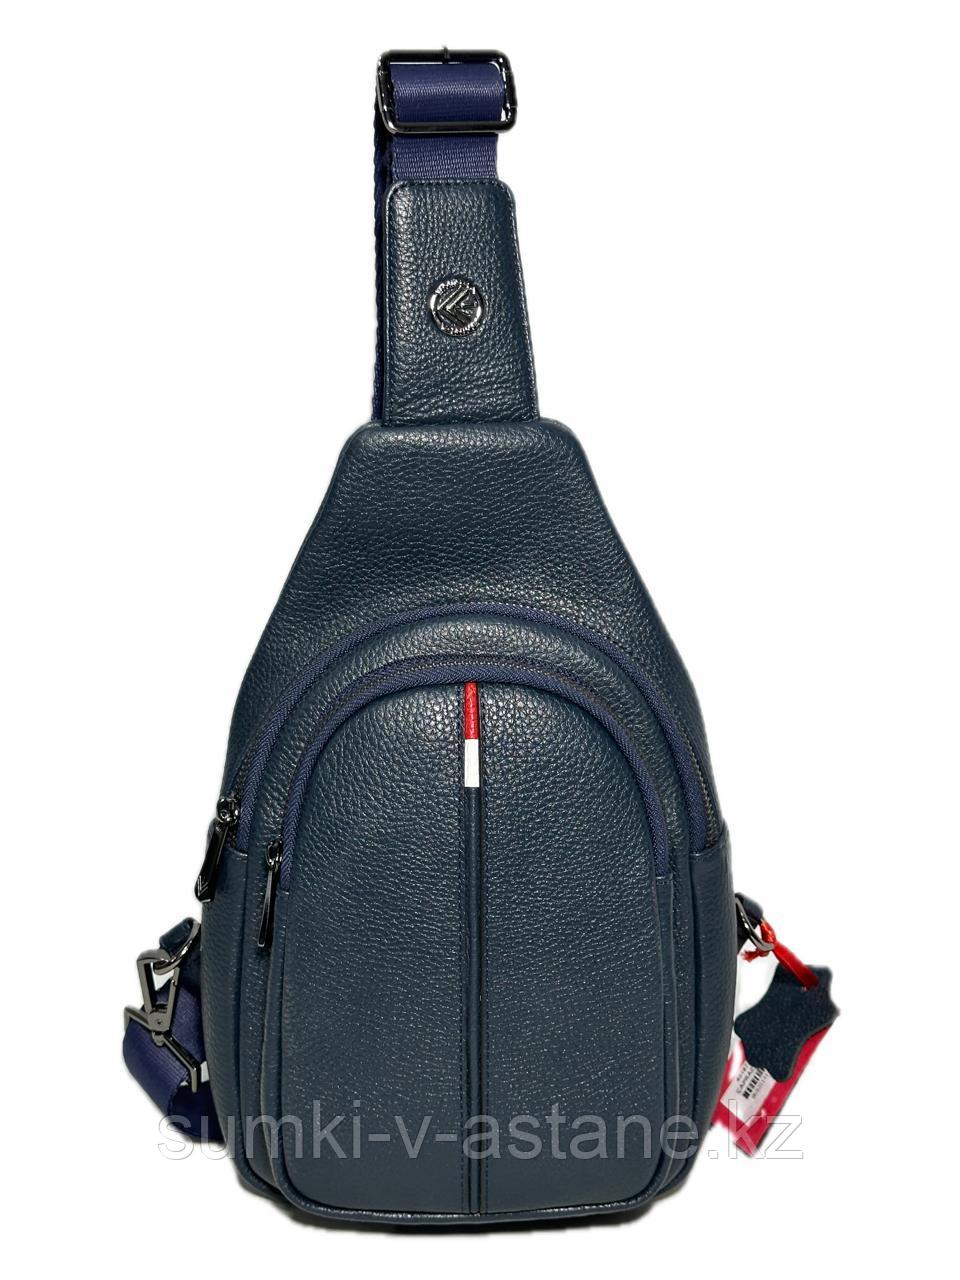 Мужская сумка-слинг-рюкзак из кожи от турецкого бренда "EMINSA". Высота 30 см, ширина 17 см, глубина 9 см.